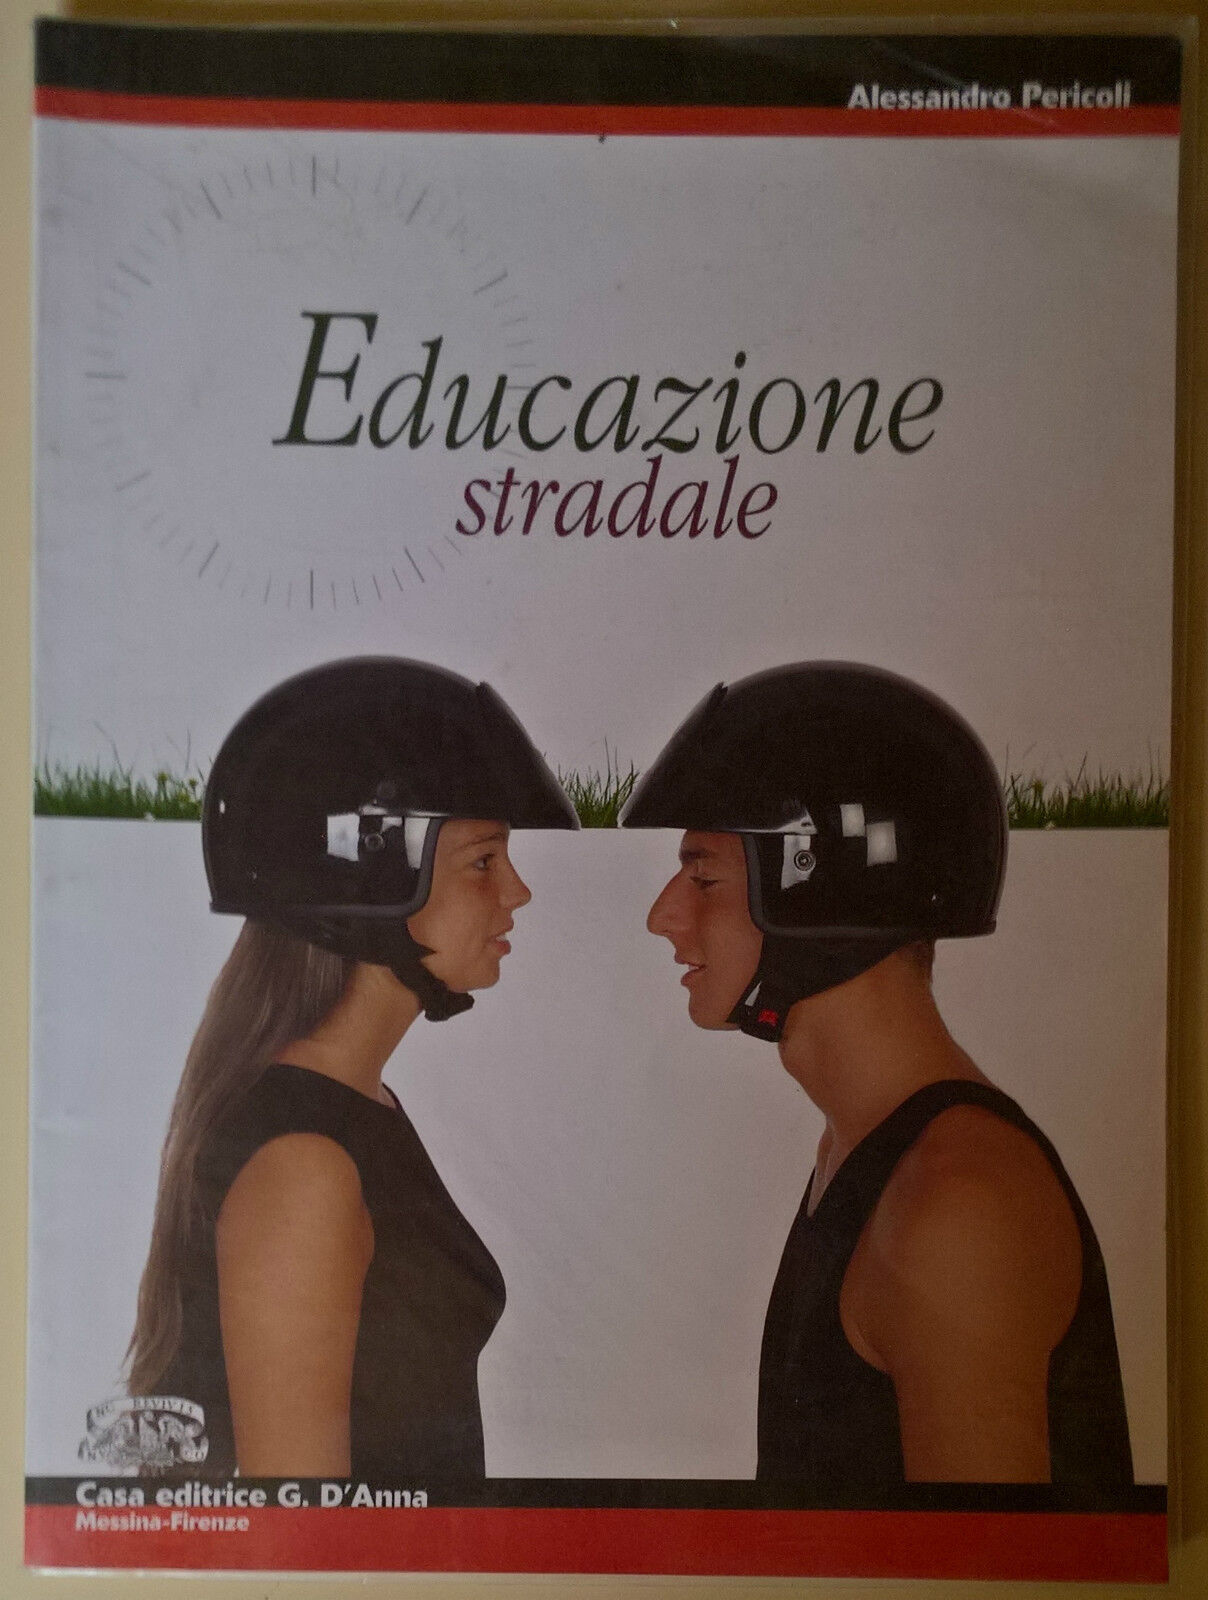 Educazione stradale - Alessandro Pericoli - 2003, Casa Editrice G. d'Anna - L